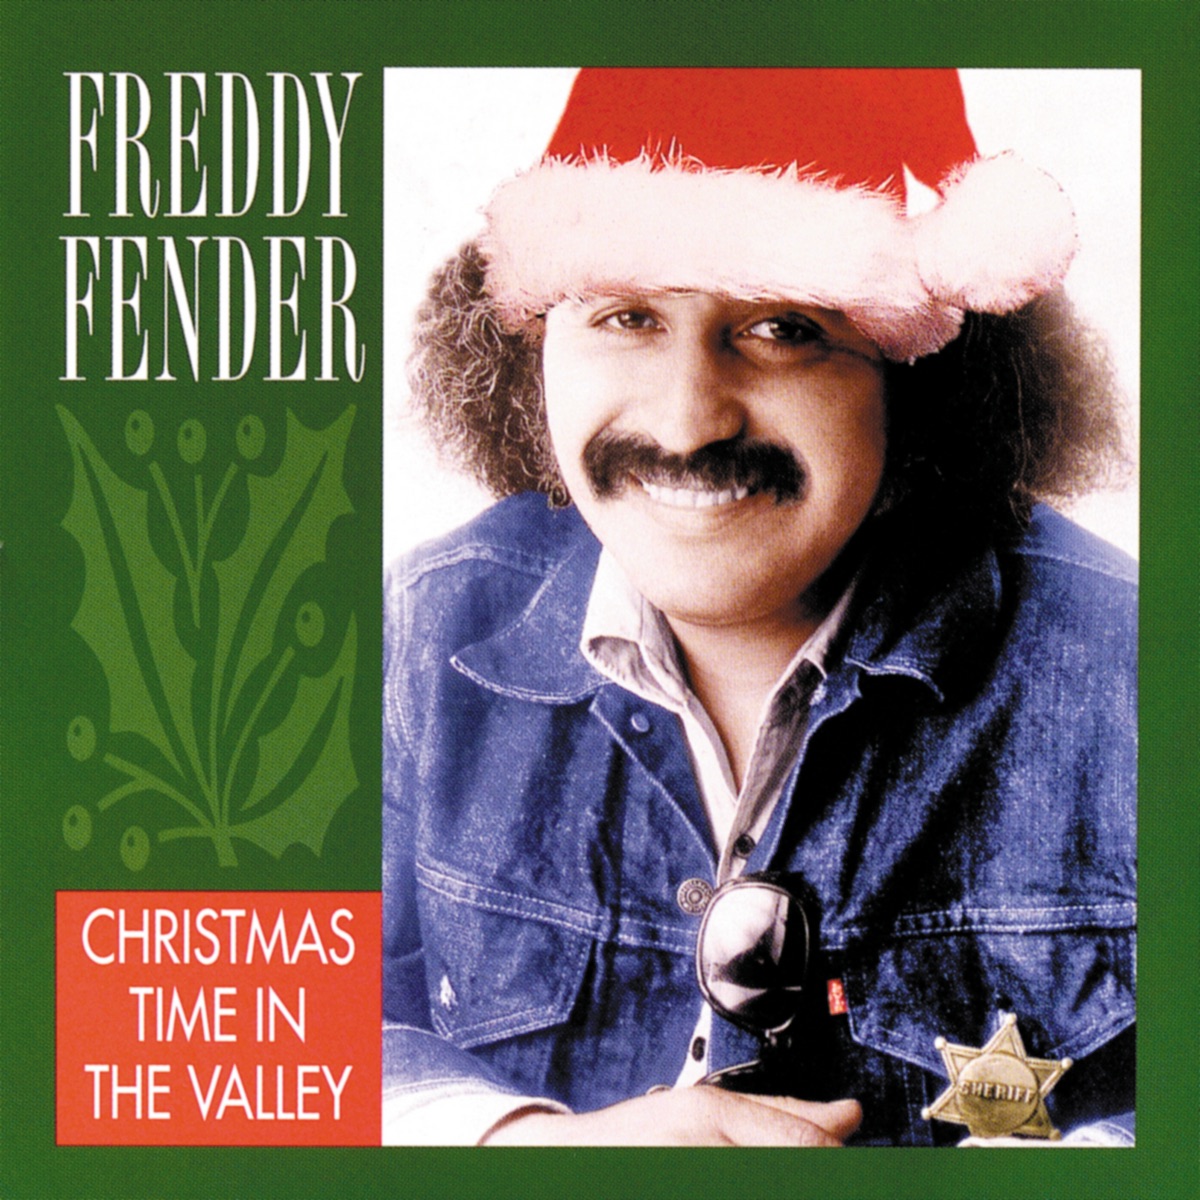 Freddy Fender Discography Download Torrent